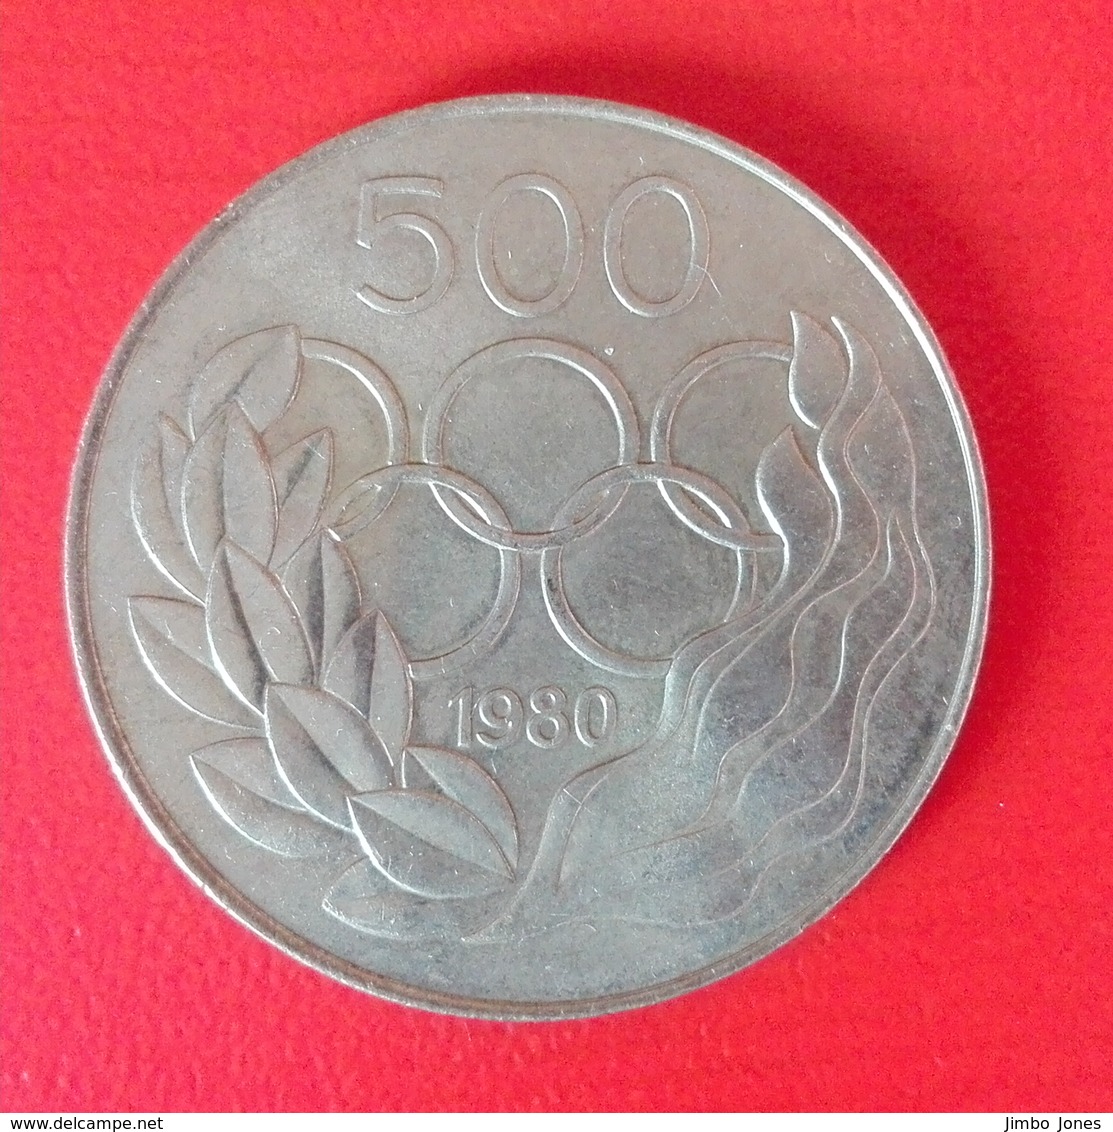 500 Mil Münze Aus Zypern Von 1980 (sehr Schön) - Chypre